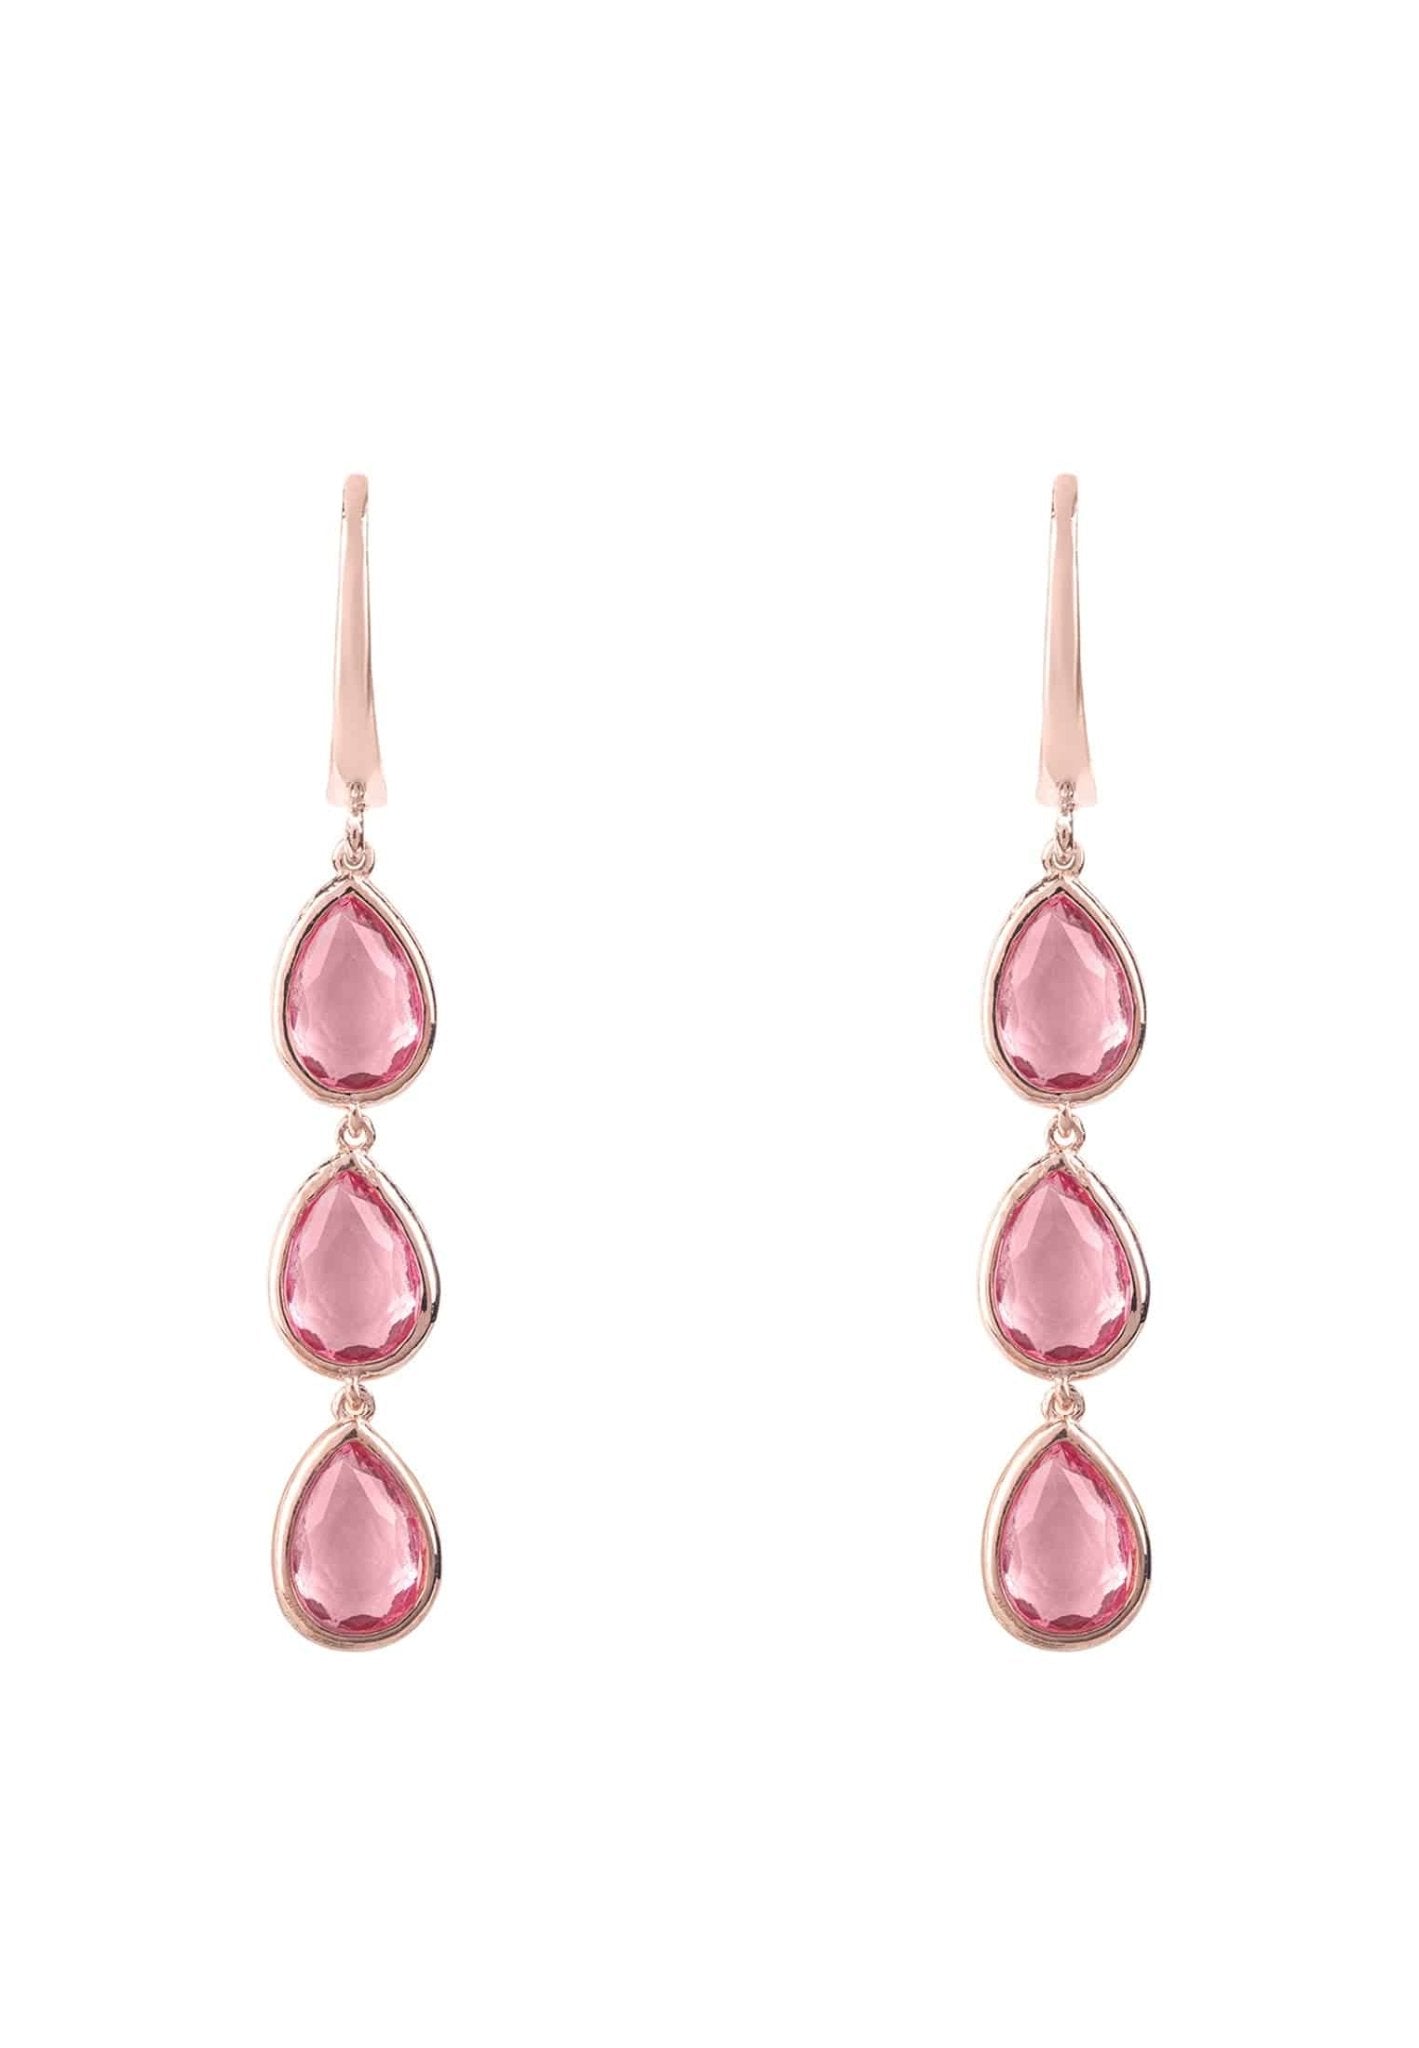 Sorrento Triple Drop Earrings Rosegold Pink Tourmaline - LATELITA Earrings